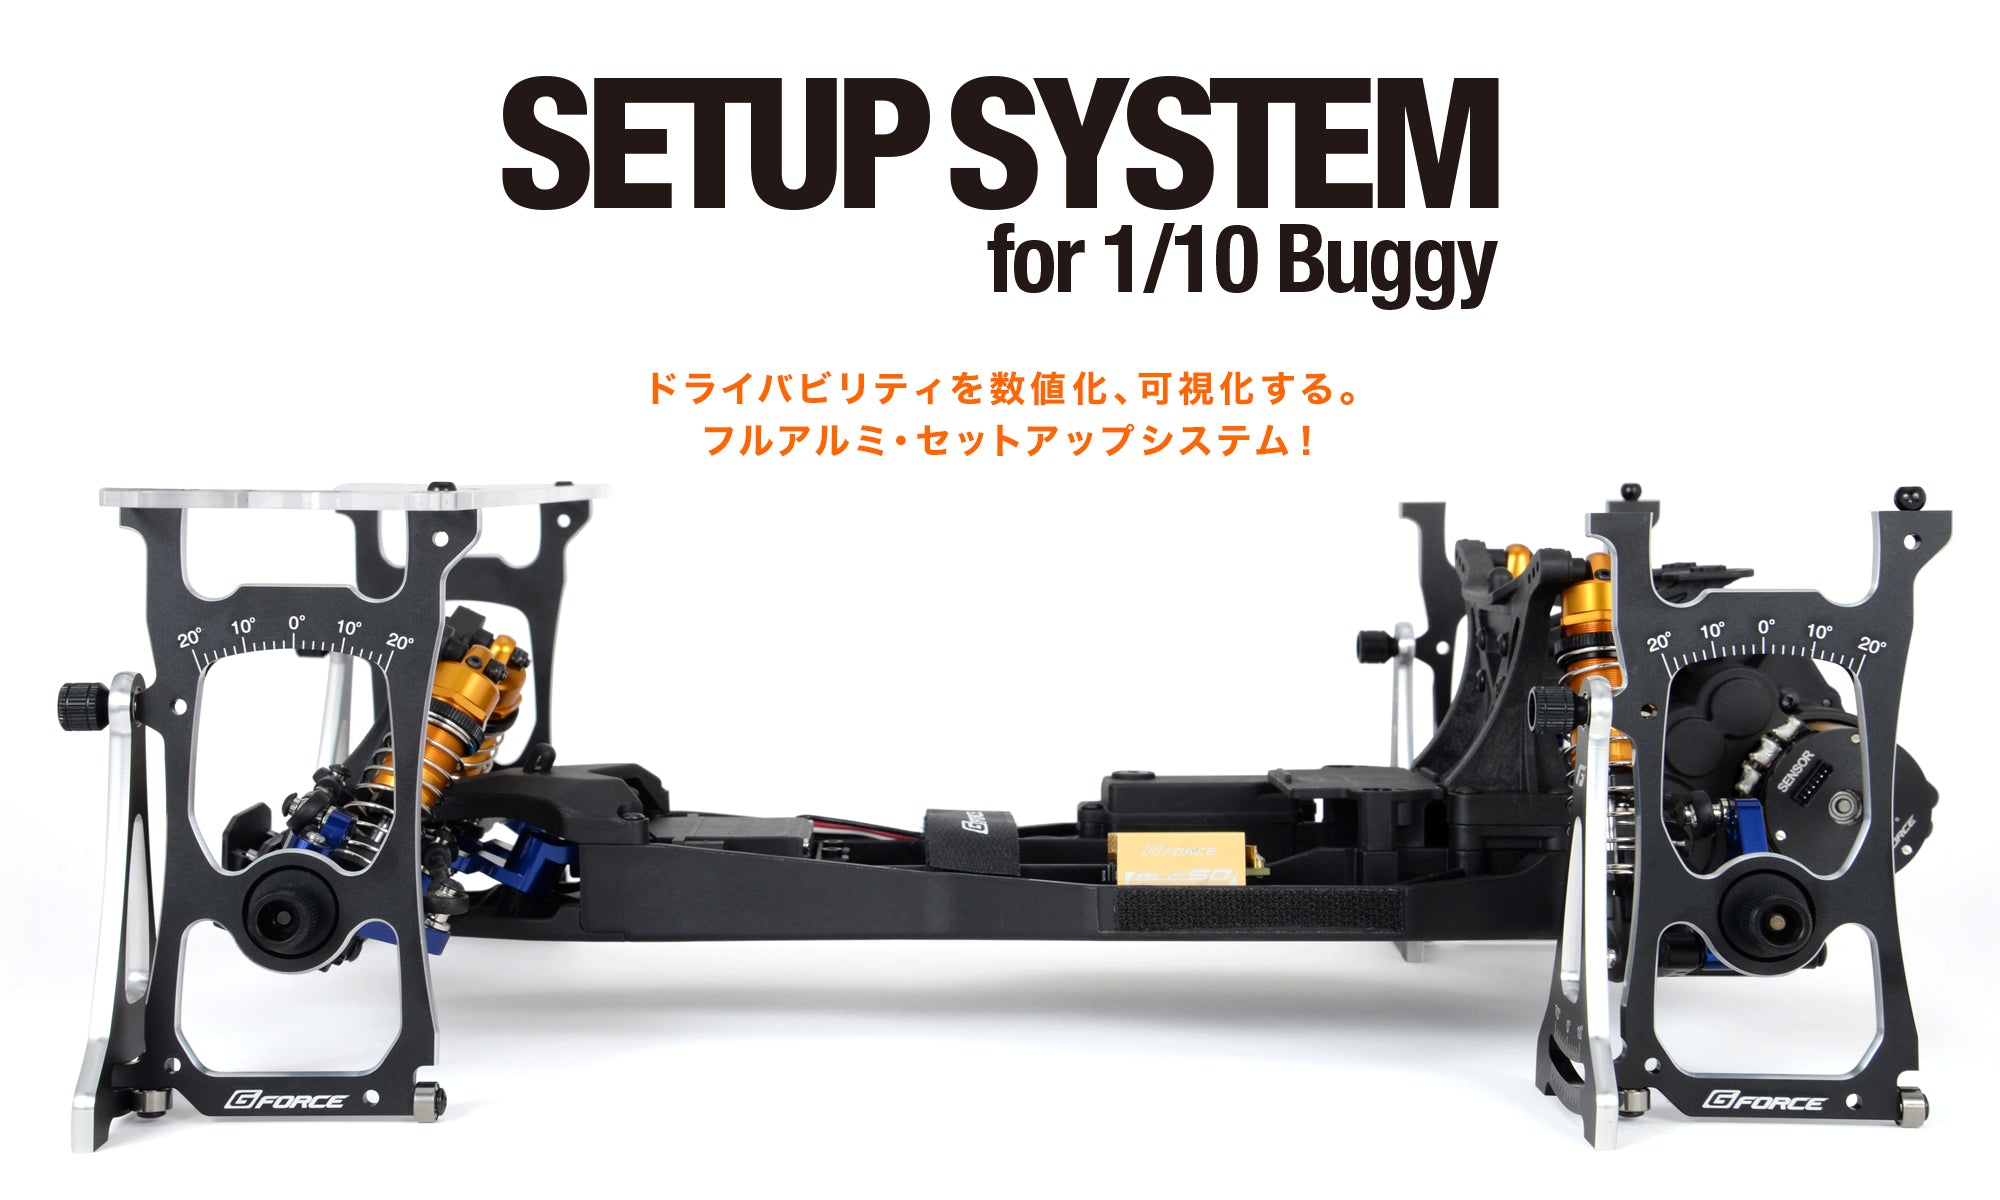 G0382 Set Up System for 1/10 Buggy (Black)